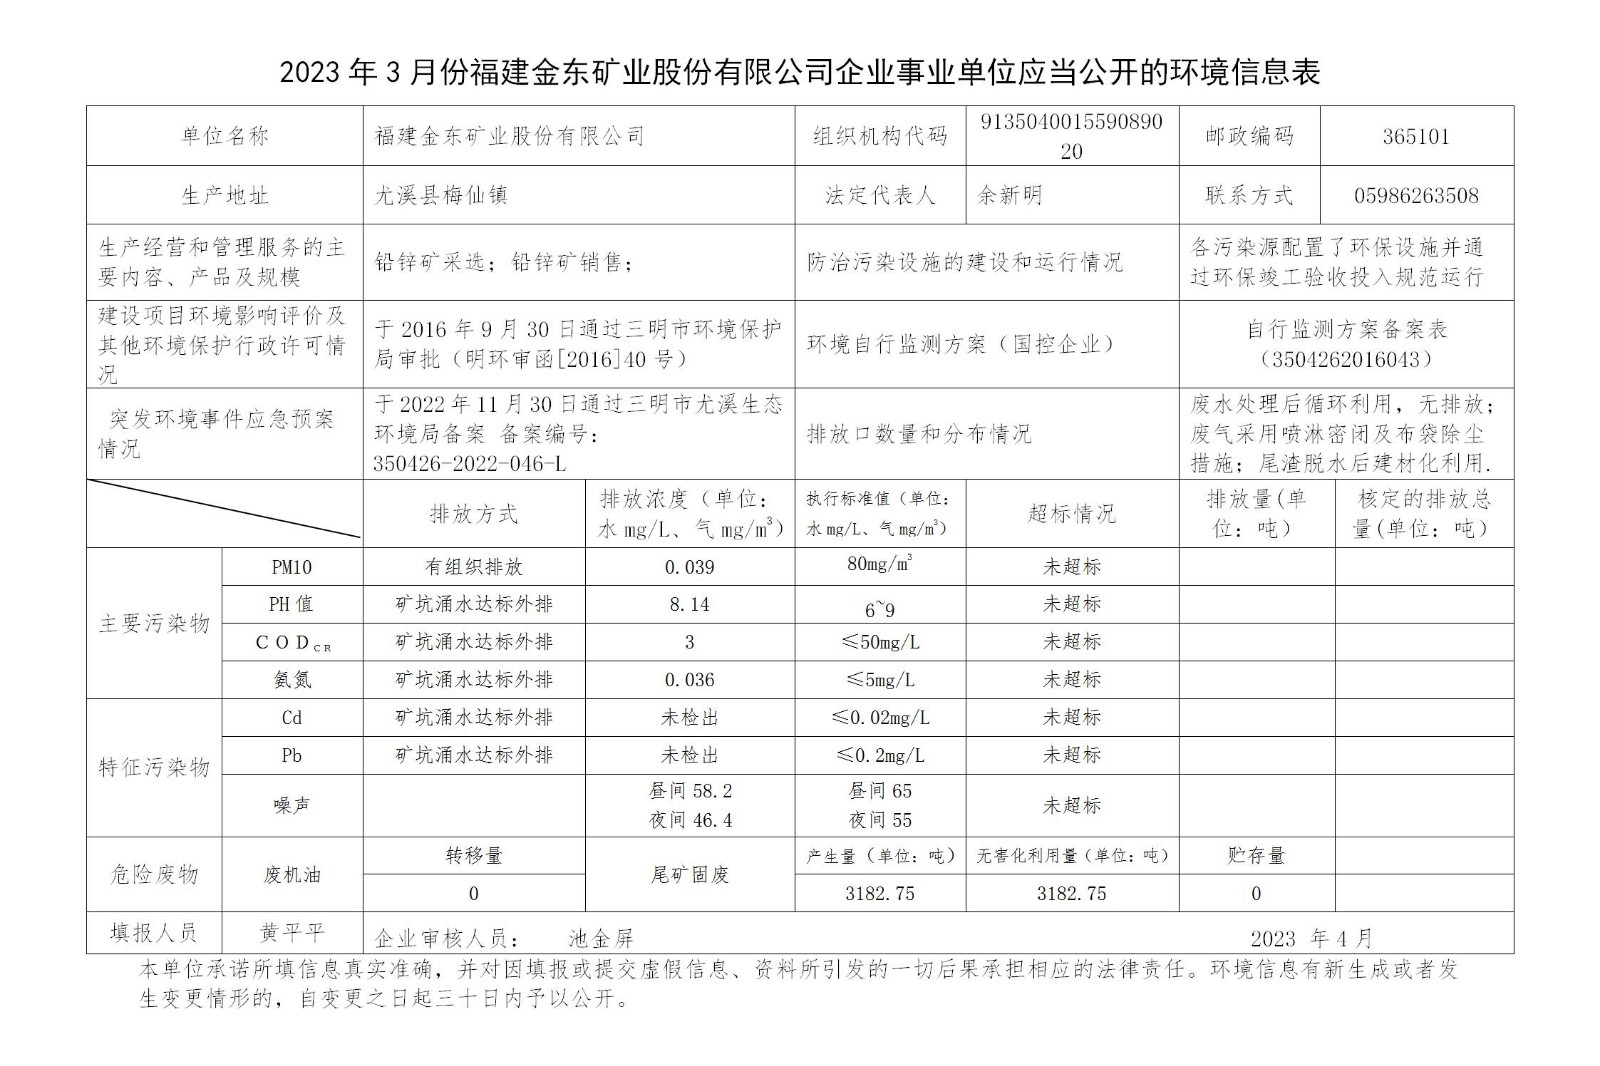 2023年3月份NBA下注官网-nba中国官方网站[HOME]企业事业单位应当公开的环境信息表_01.jpg